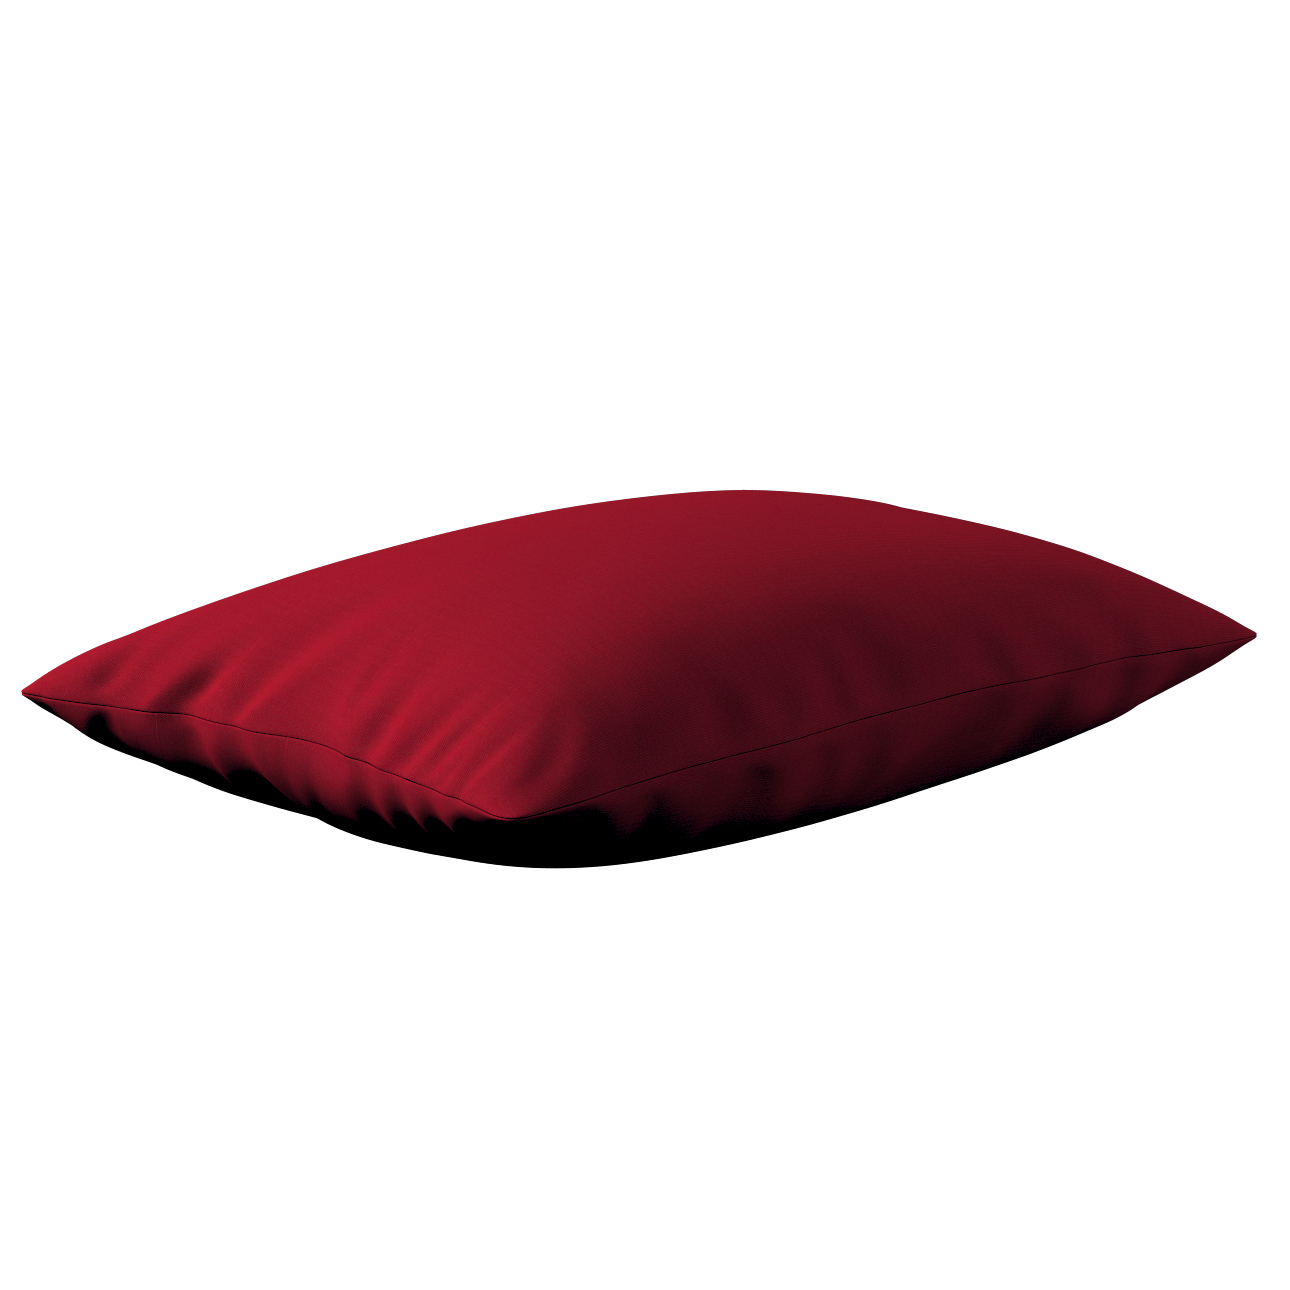 Kissenhülle Kinga rechteckig, rot, 60 x 40 cm, Etna (705-60) günstig online kaufen